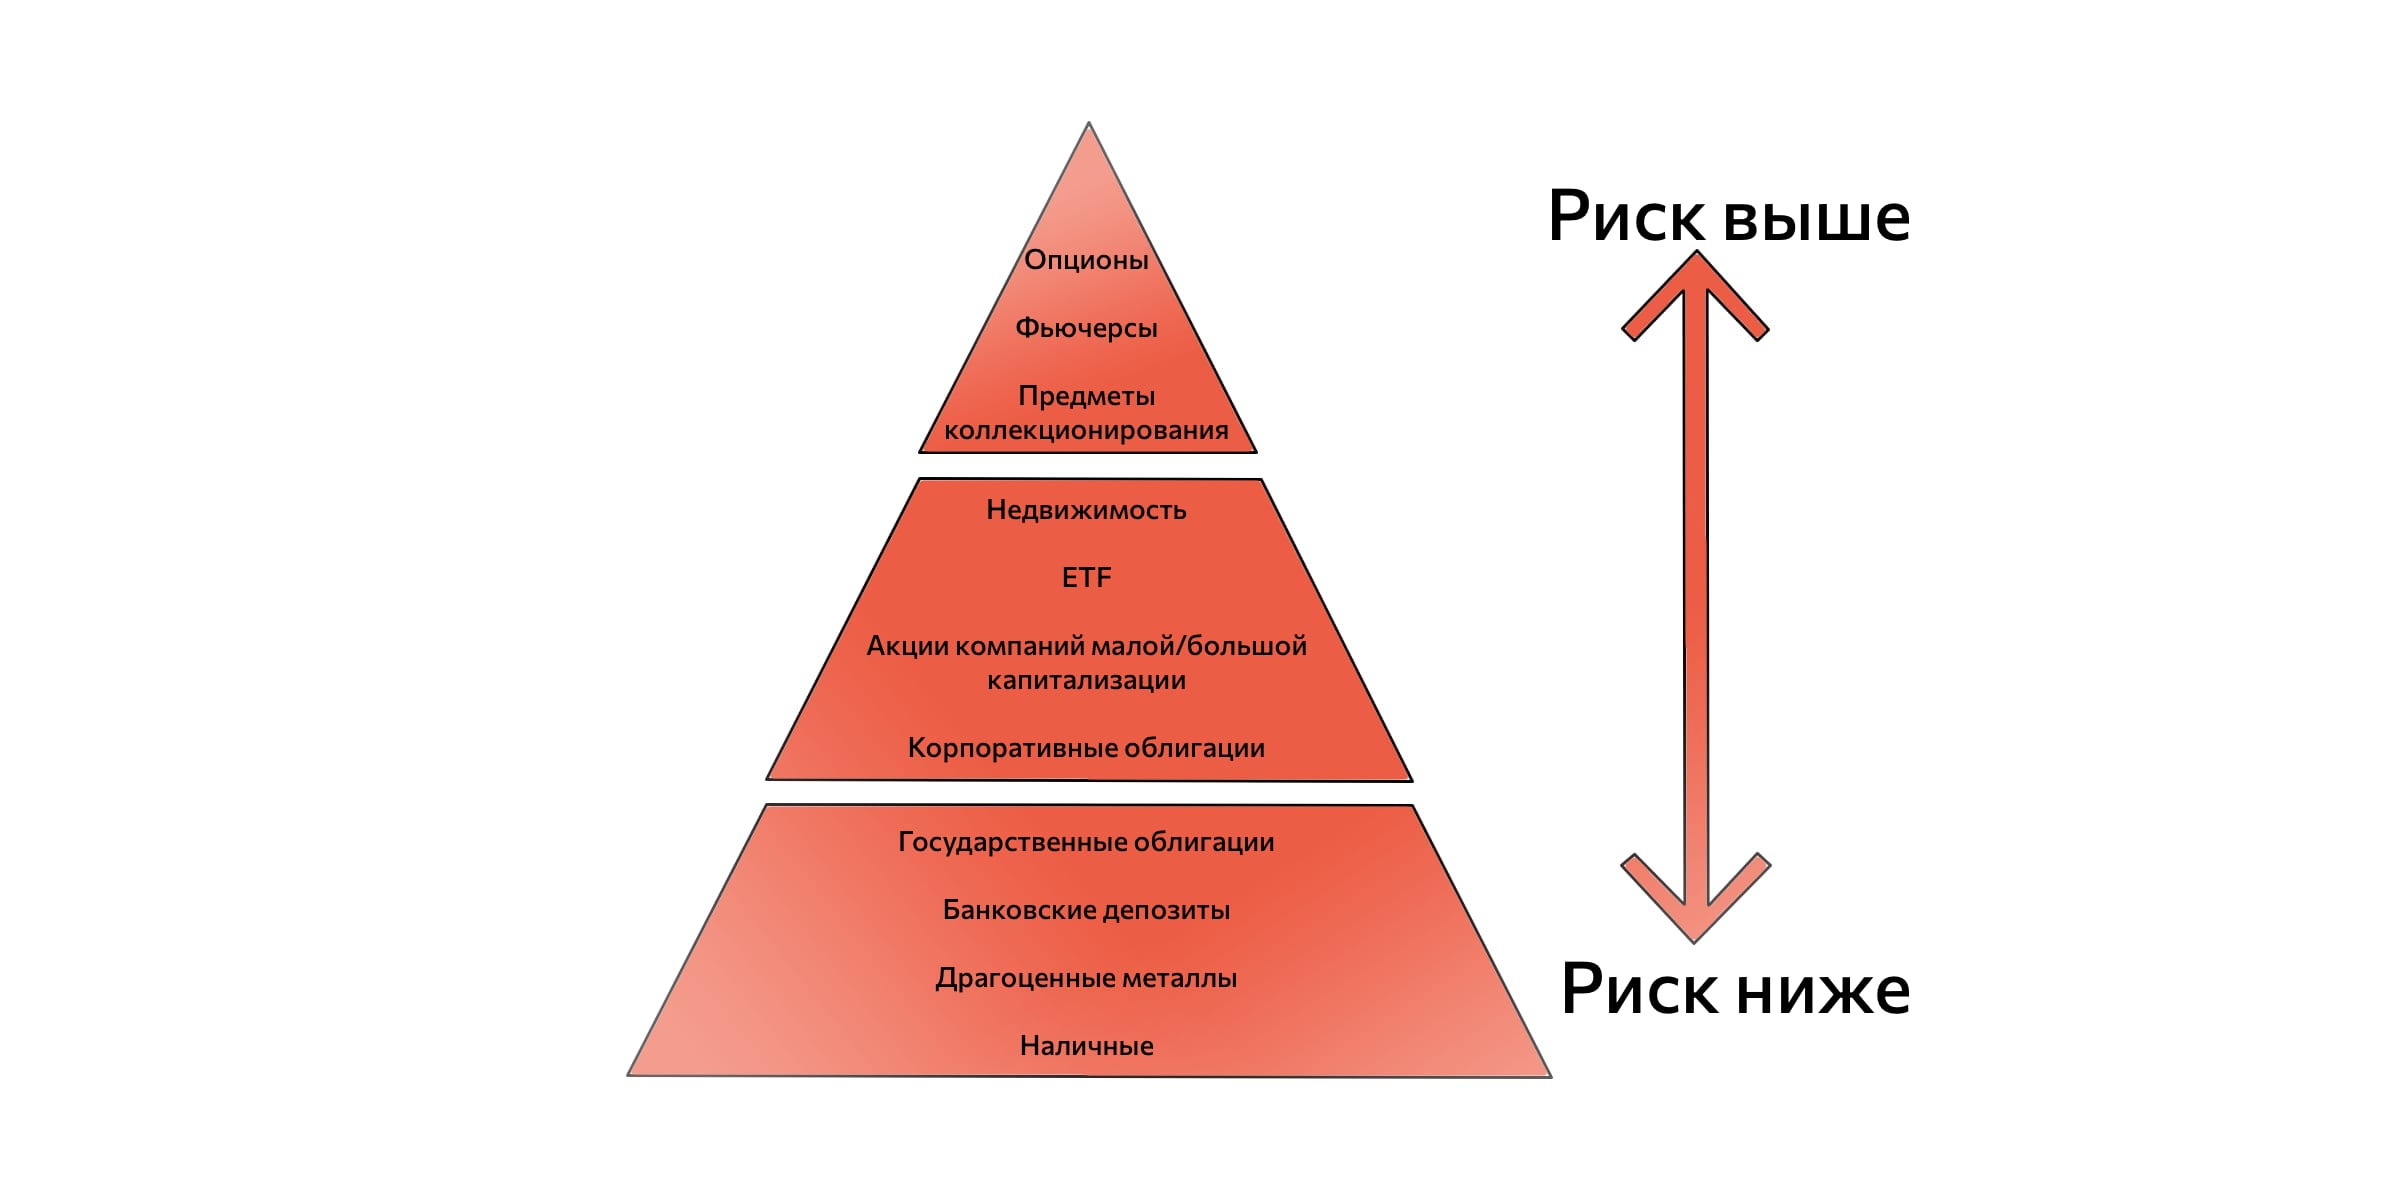 Пирамида рискованных и безопасных активов. Используется при создании инвестиционной стратегии